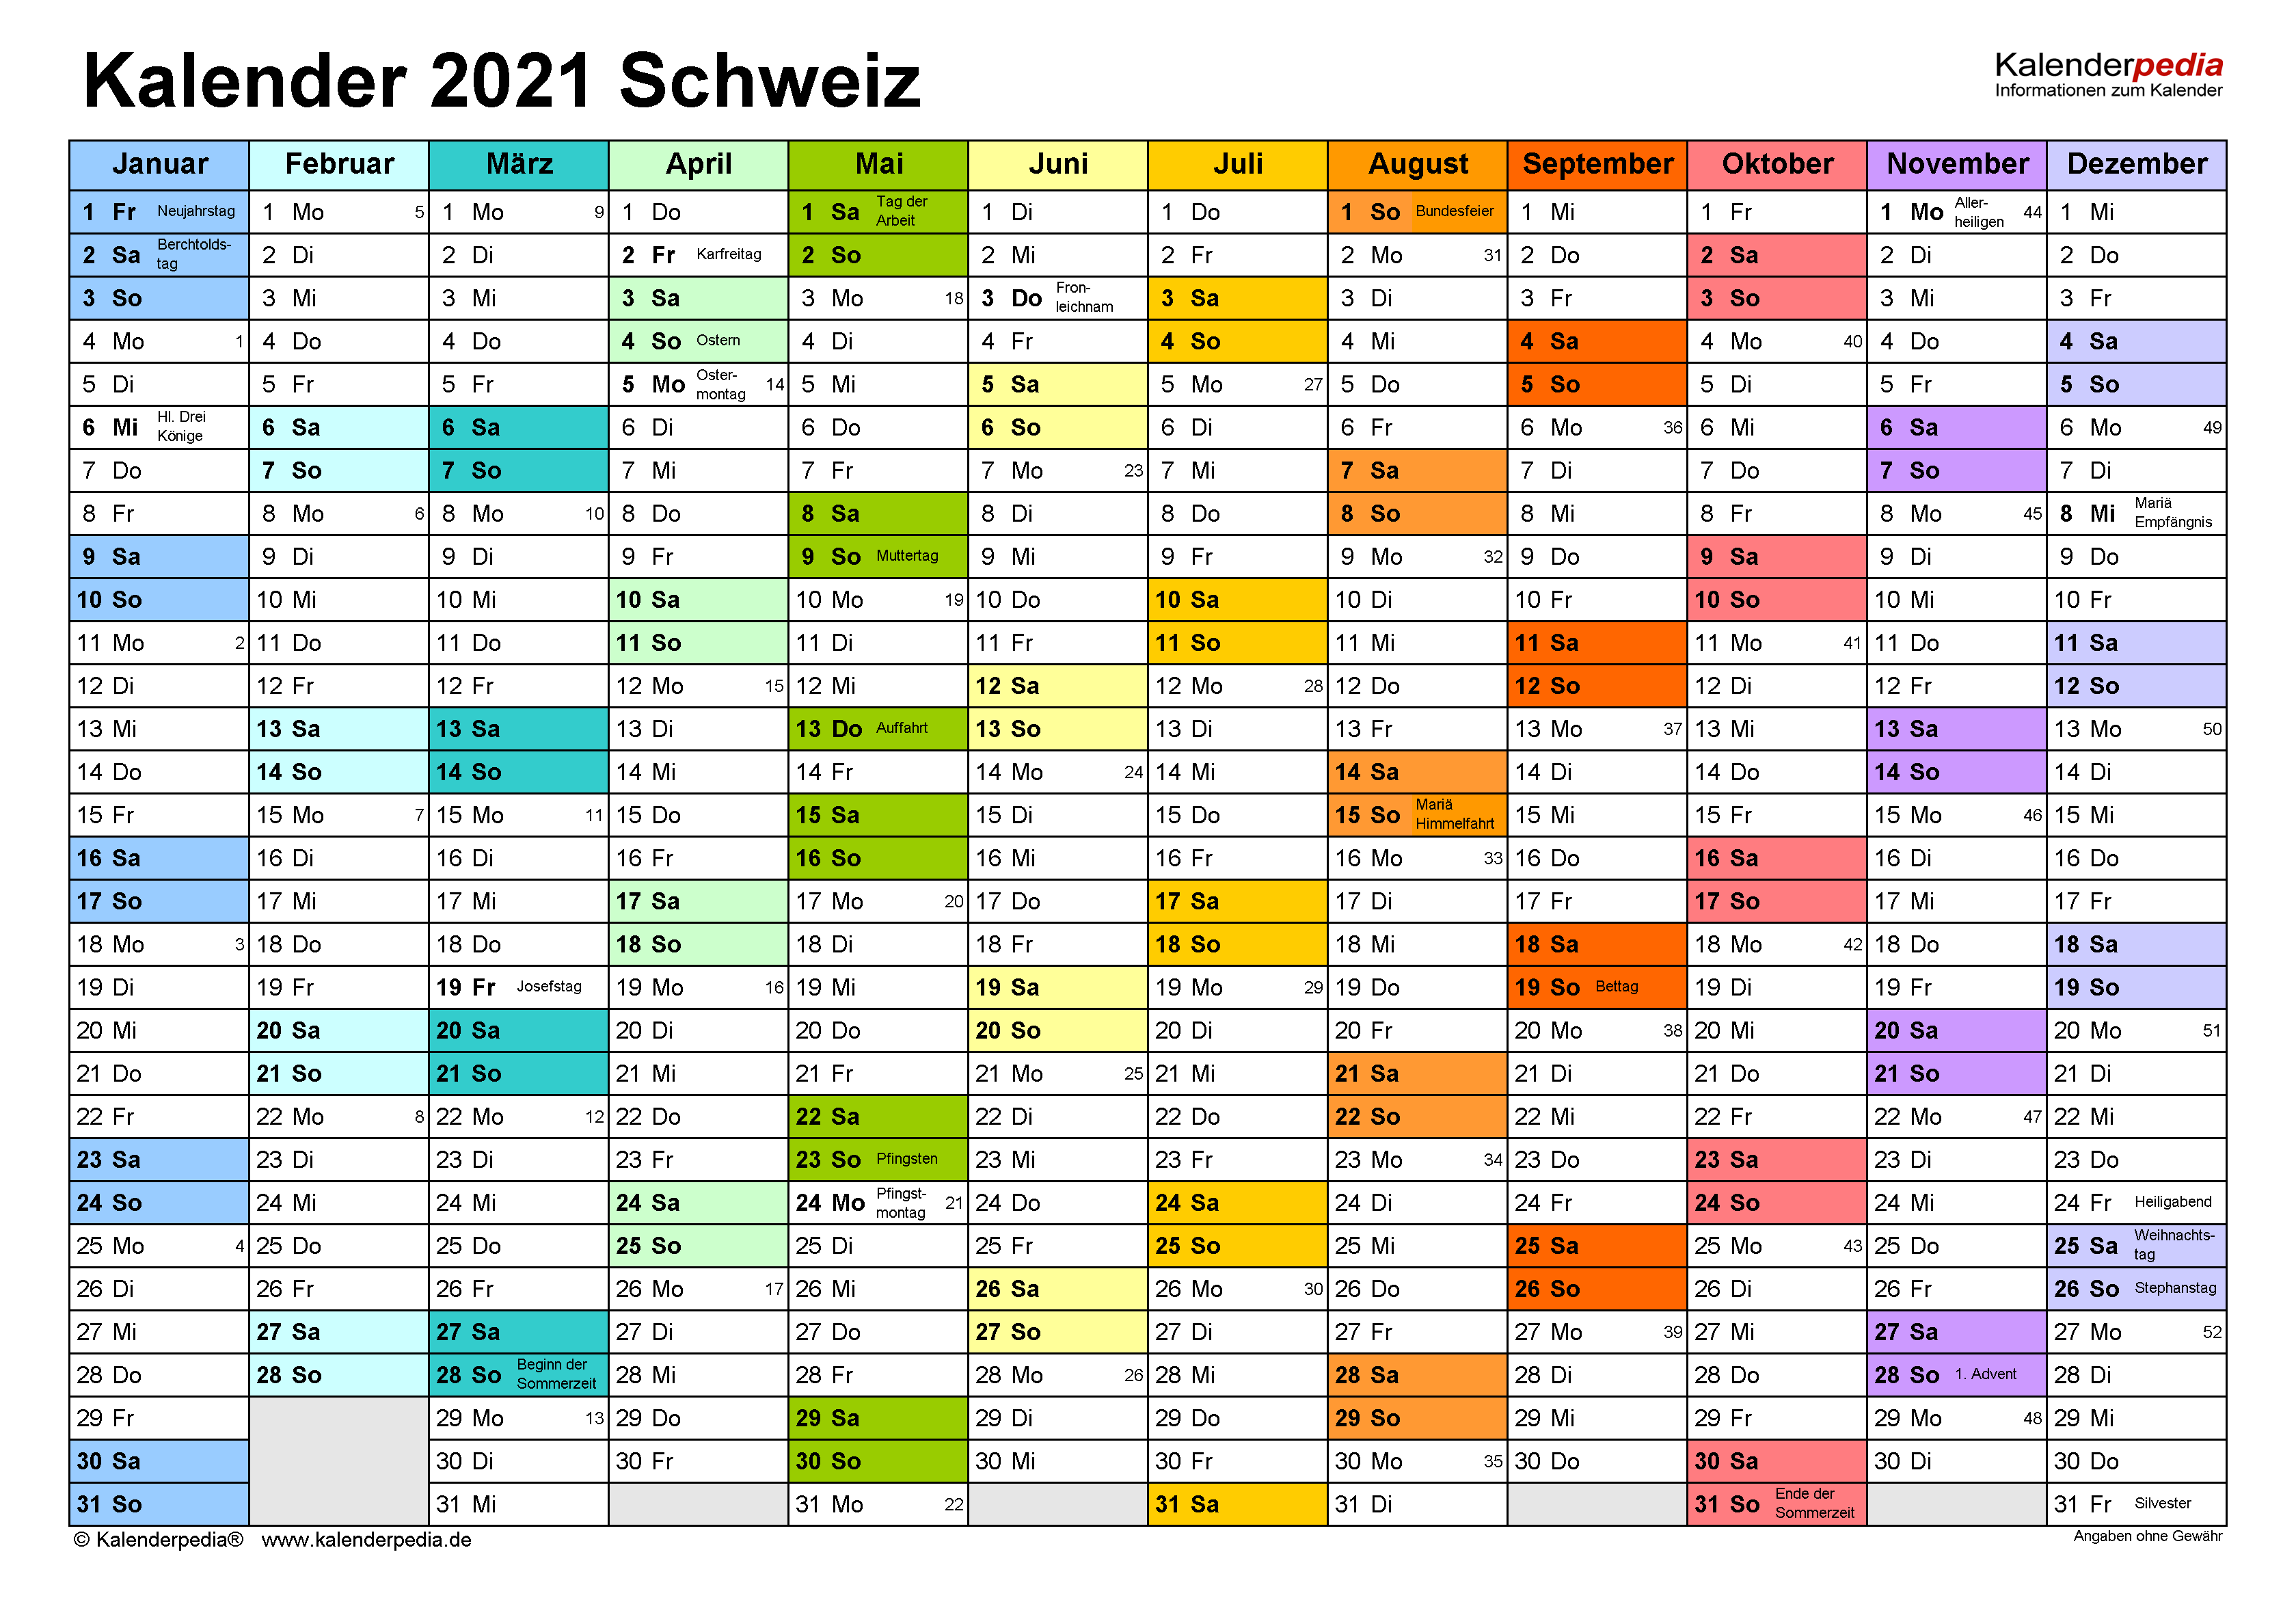 Kalender 2021 Schweiz zum Ausdrucken als PDF